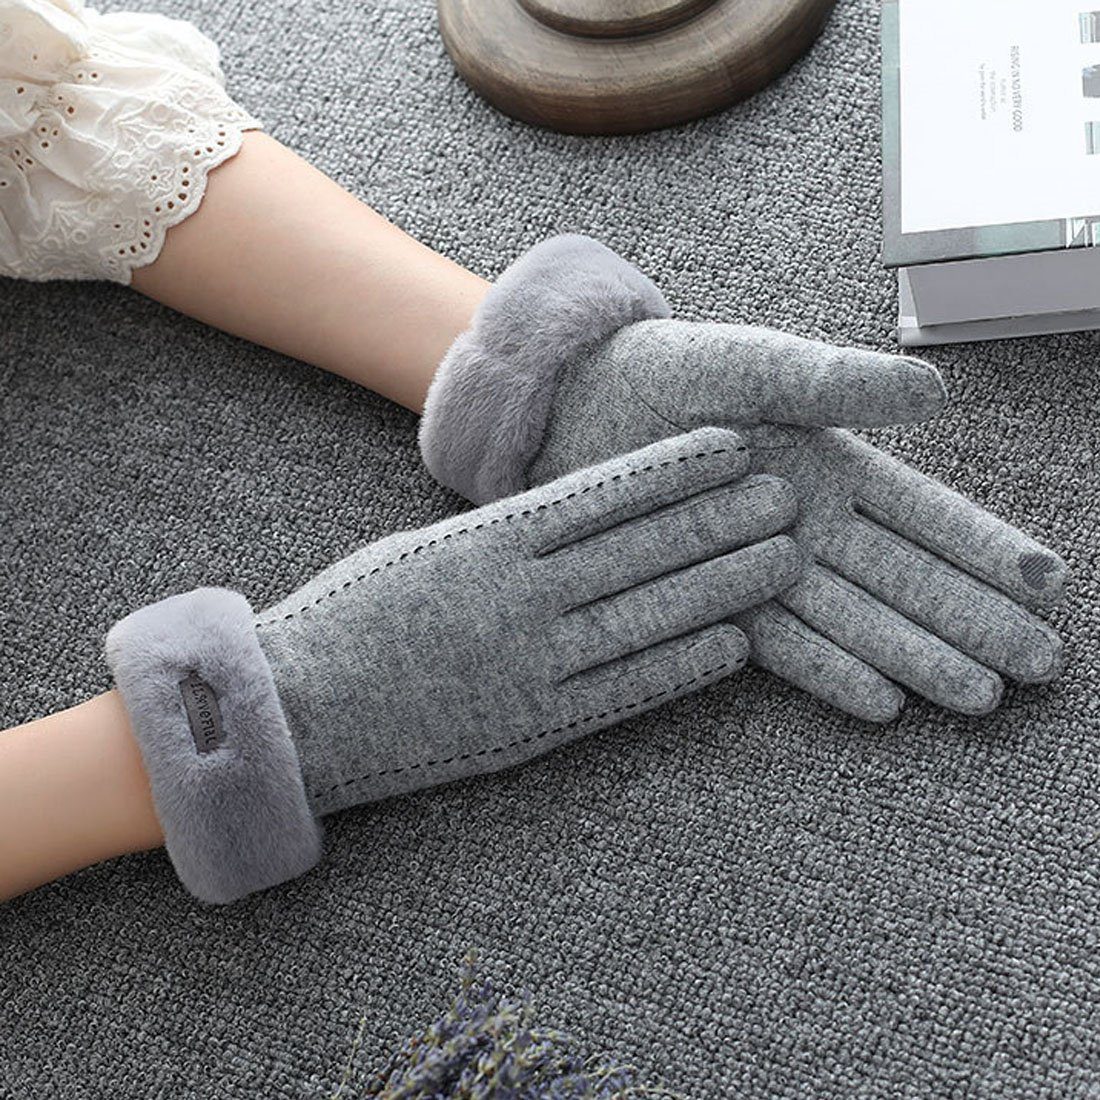 Fleecehandschuhe Damen Winter Reithandschuhe,Faux Cashmere Touchscreen Grau DÖRÖY Warme Handschuhe